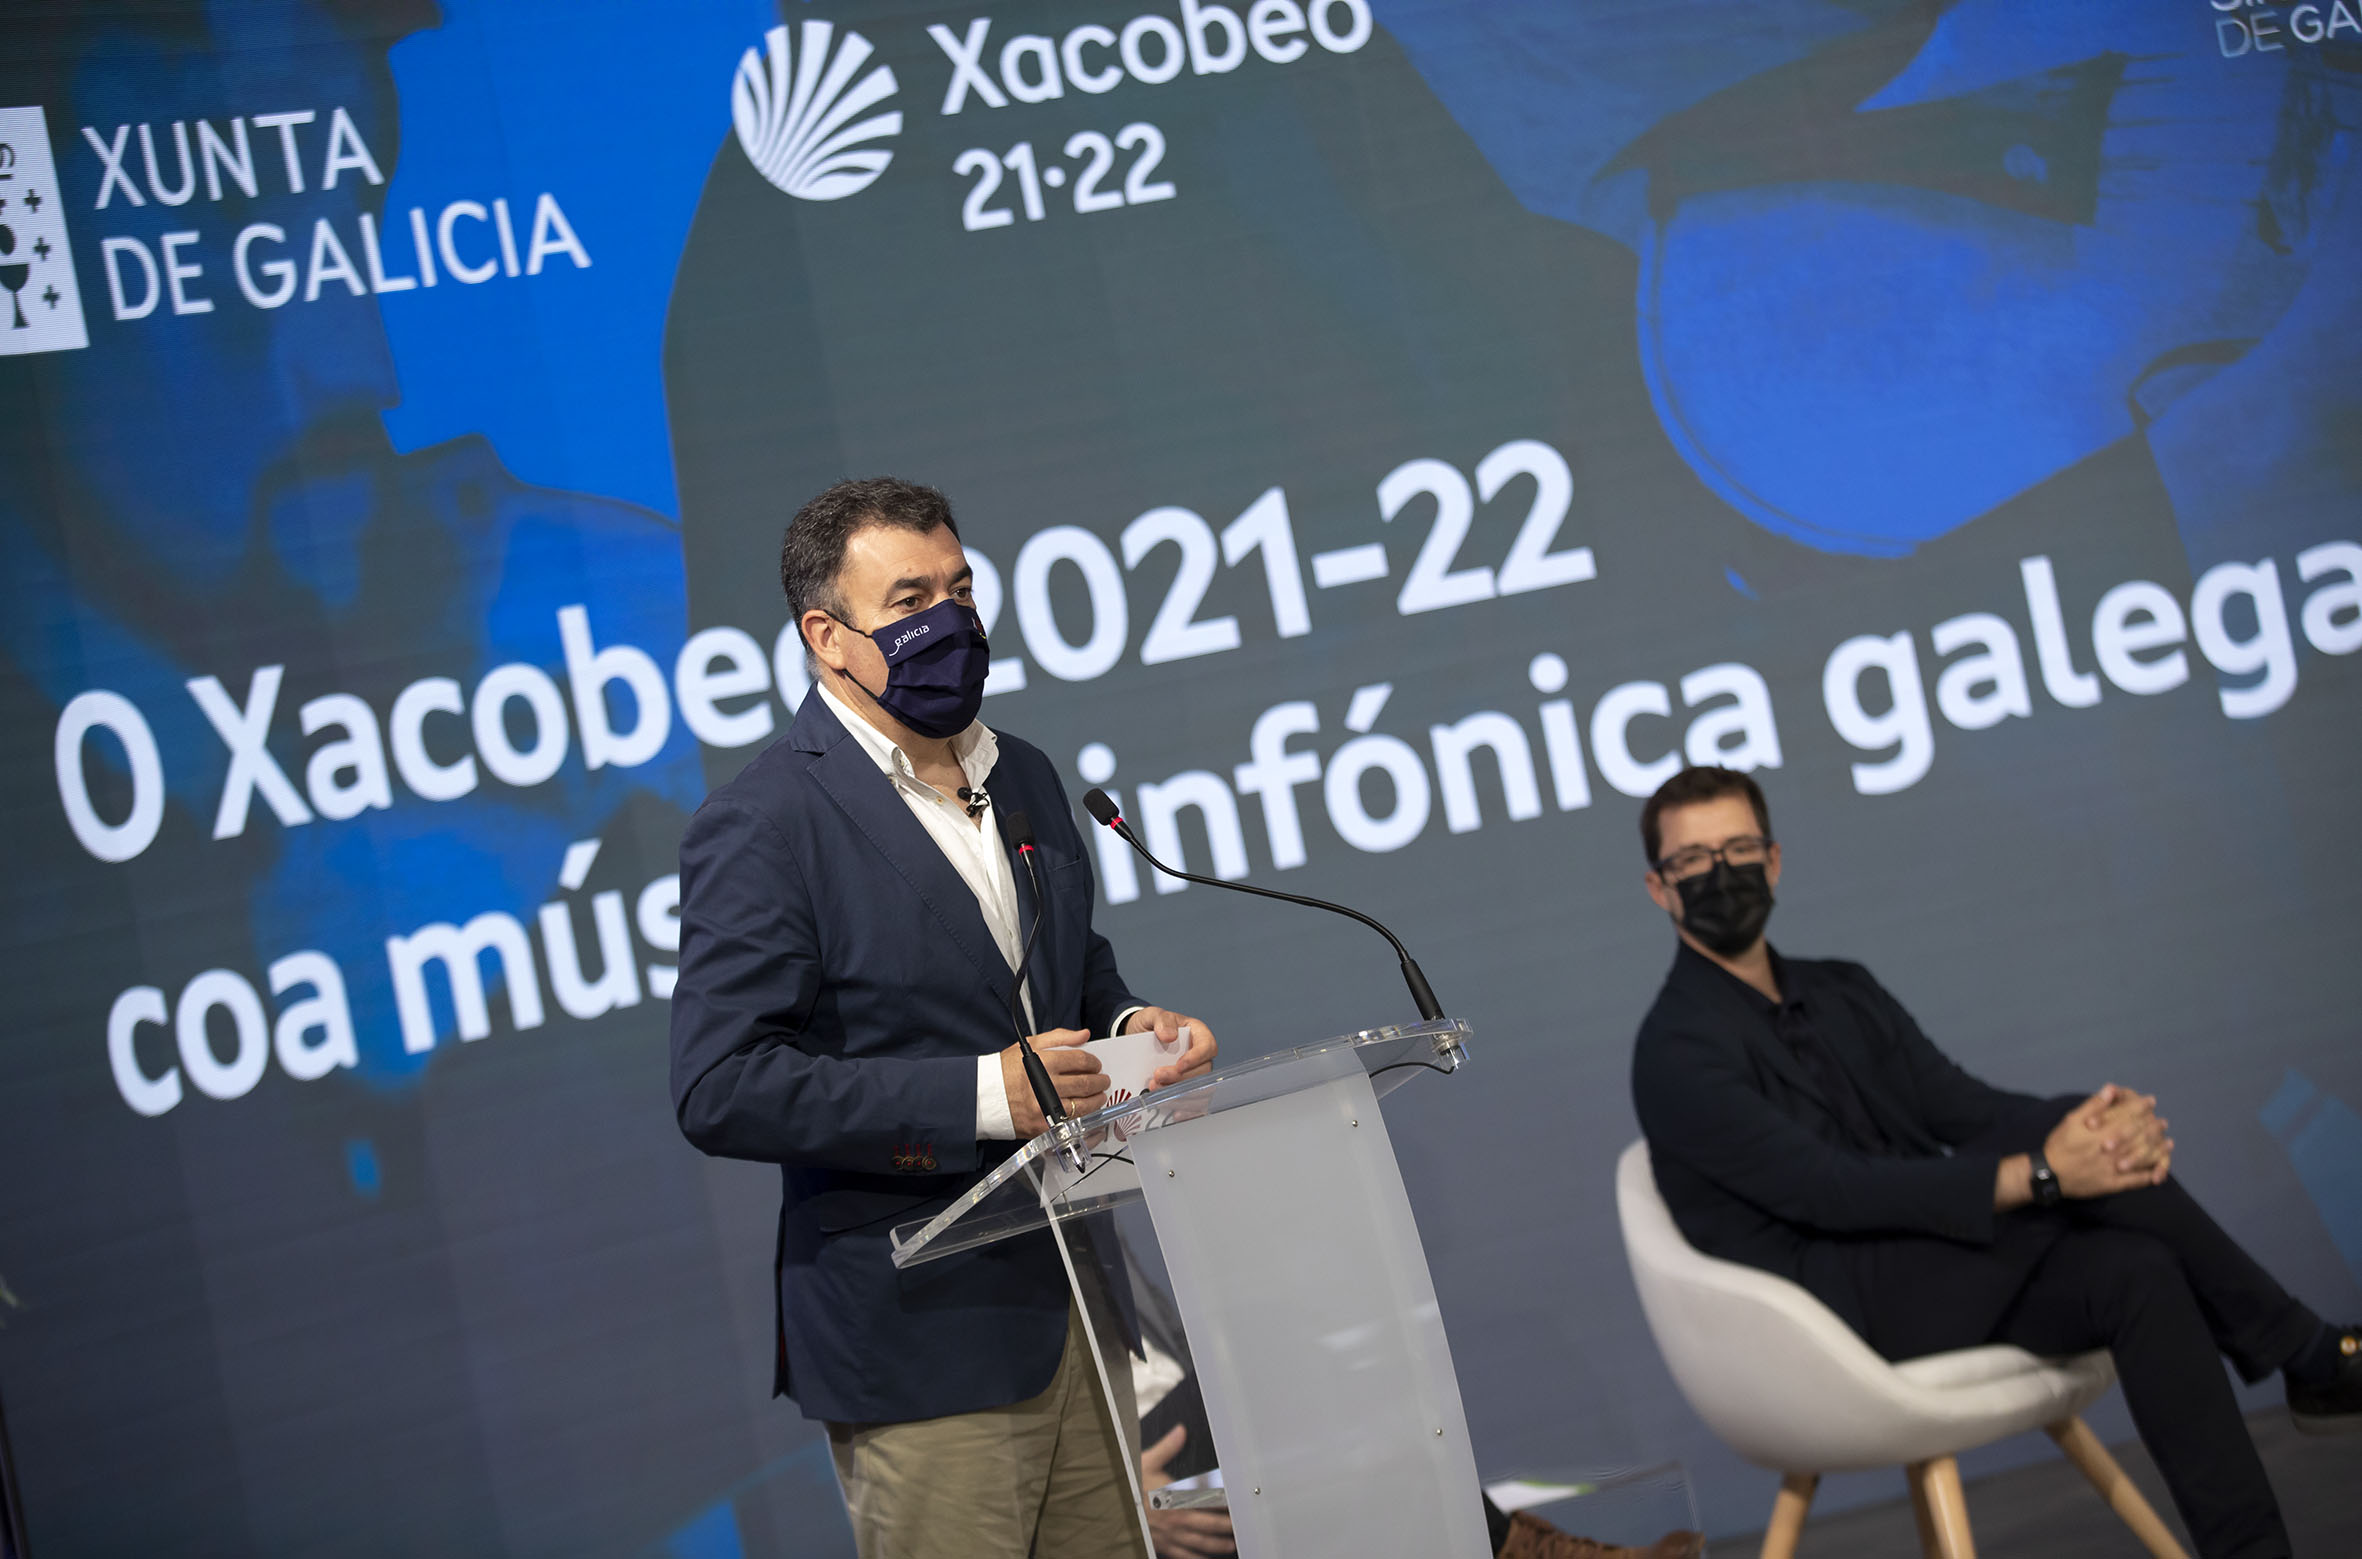 Román Rodríguez na presentación do programa sinfónico do Xacobeo. Fonte: Consellería de Cultura.